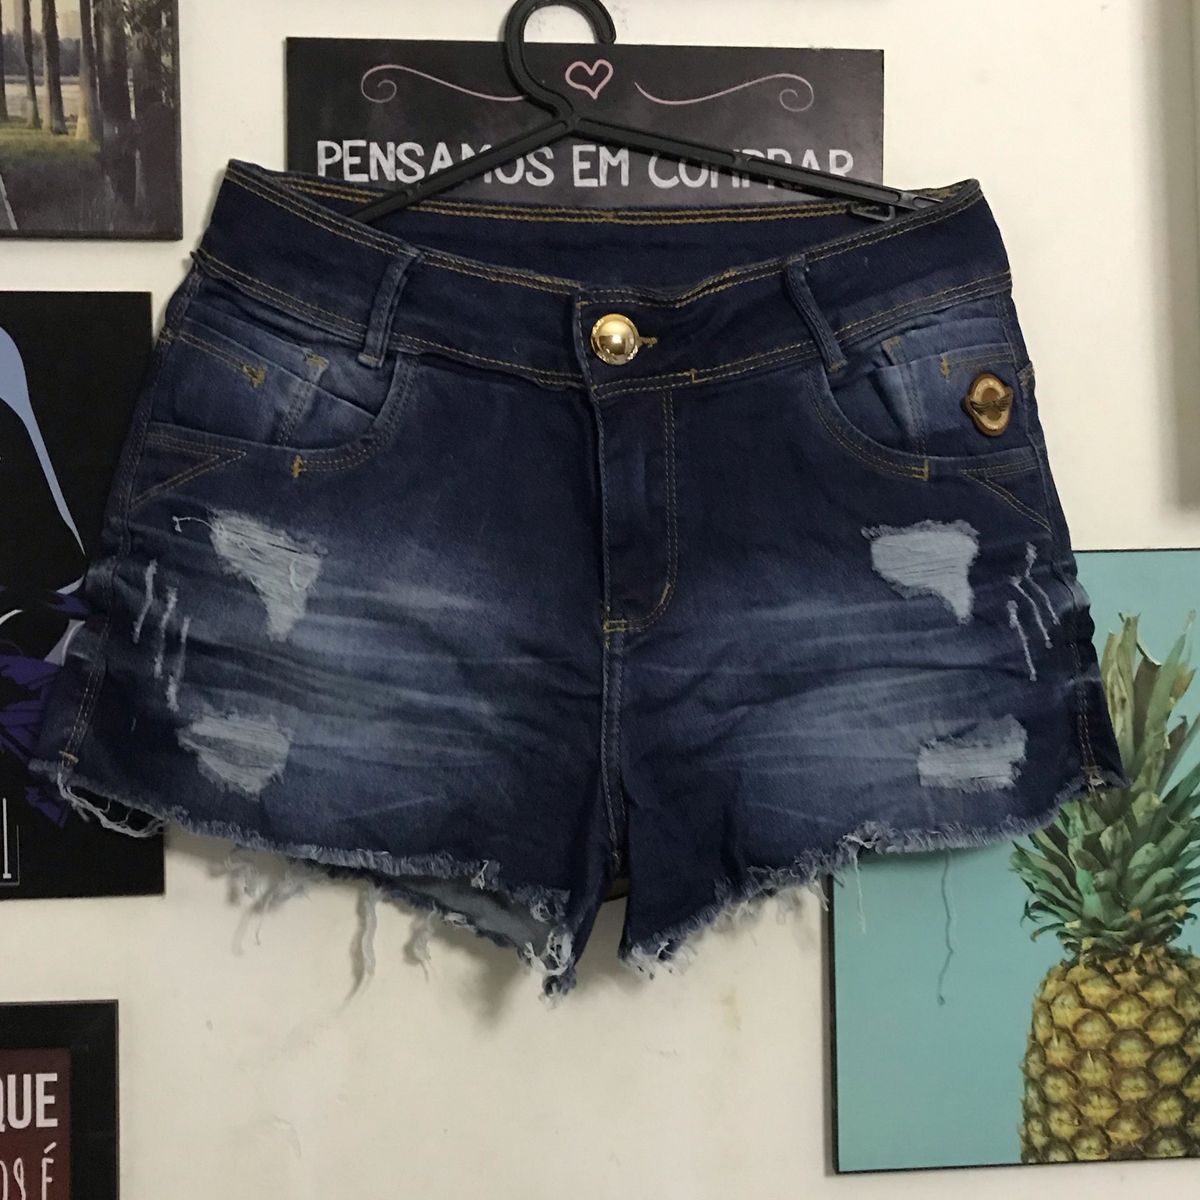 niran jeans